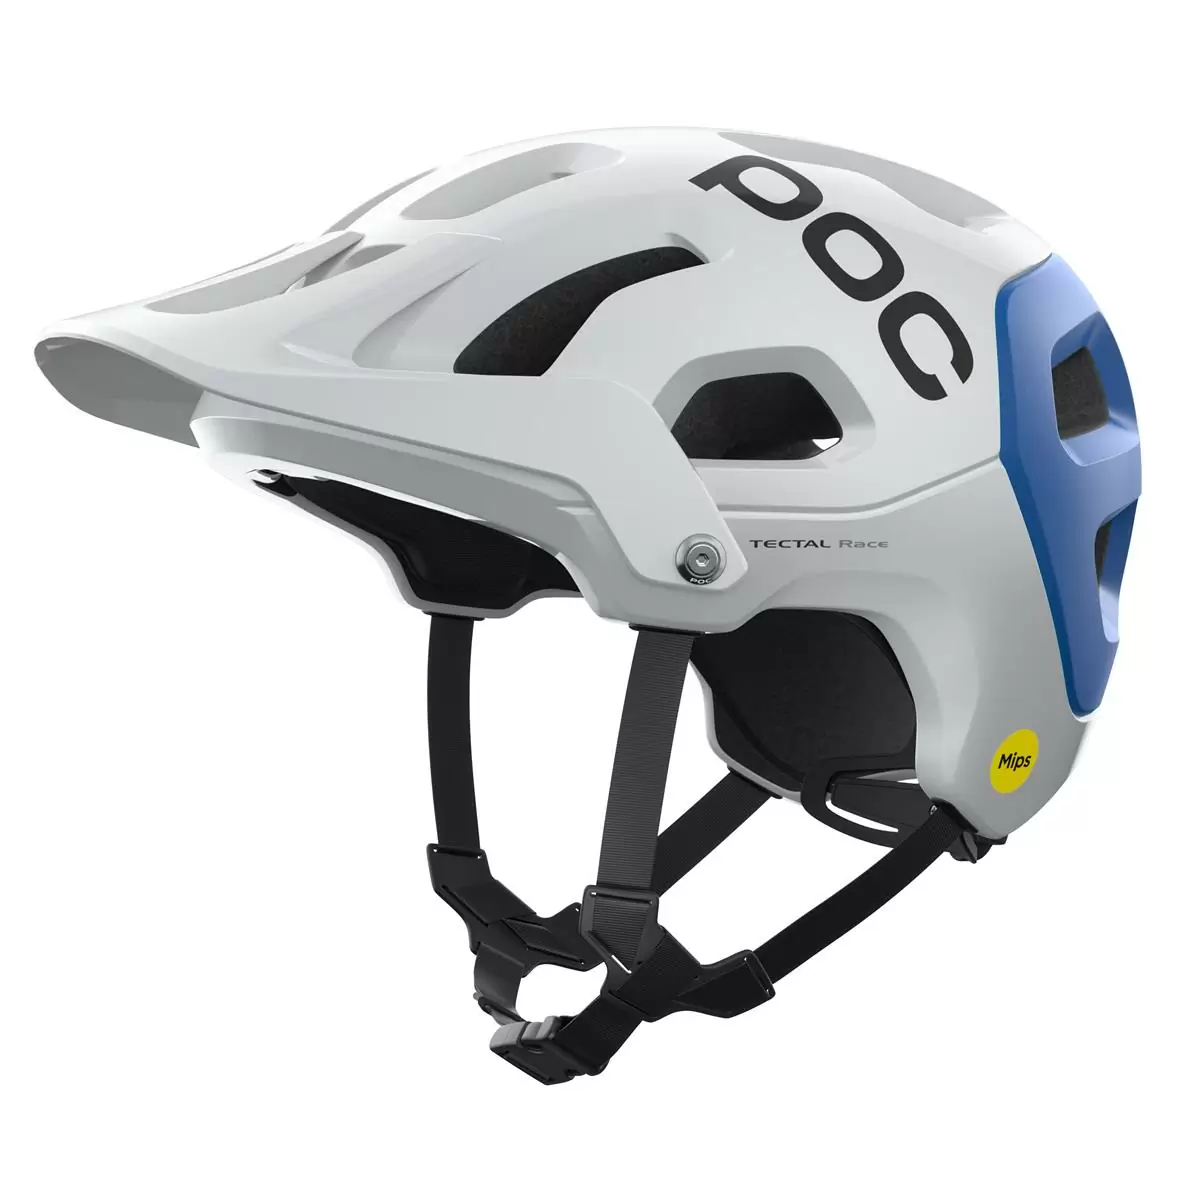 Helmet Tectal Race MIPS Hydrogen White/Opal Blue size S (51-54cm) - image